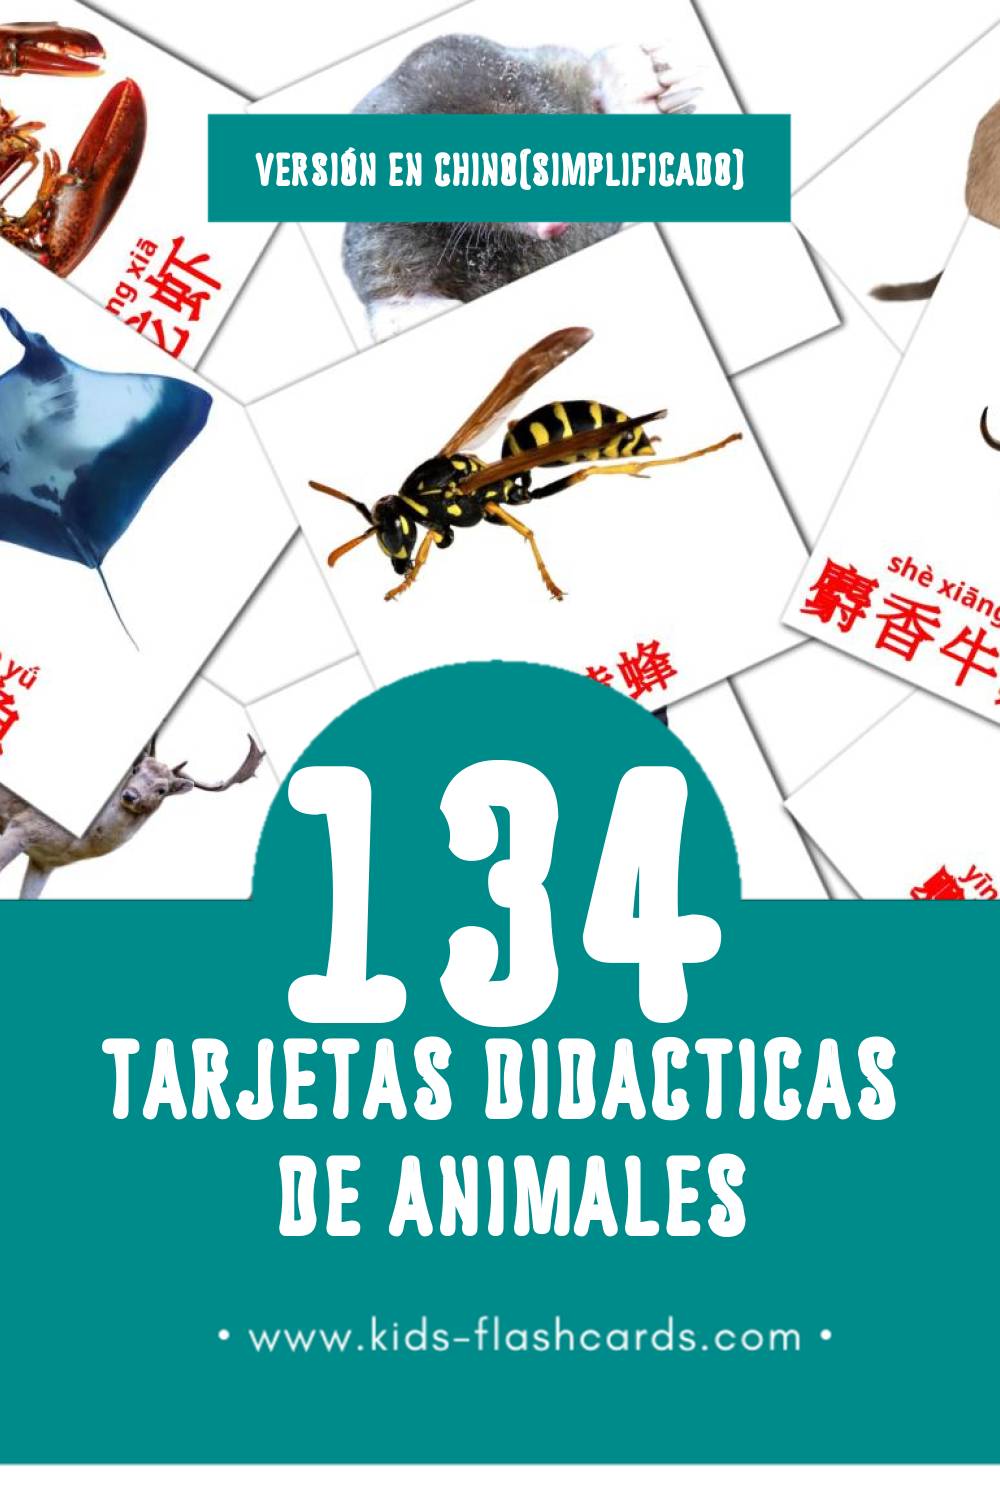 Tarjetas visuales de 动物 para niños pequeños (134 tarjetas en Chino(simplificado))